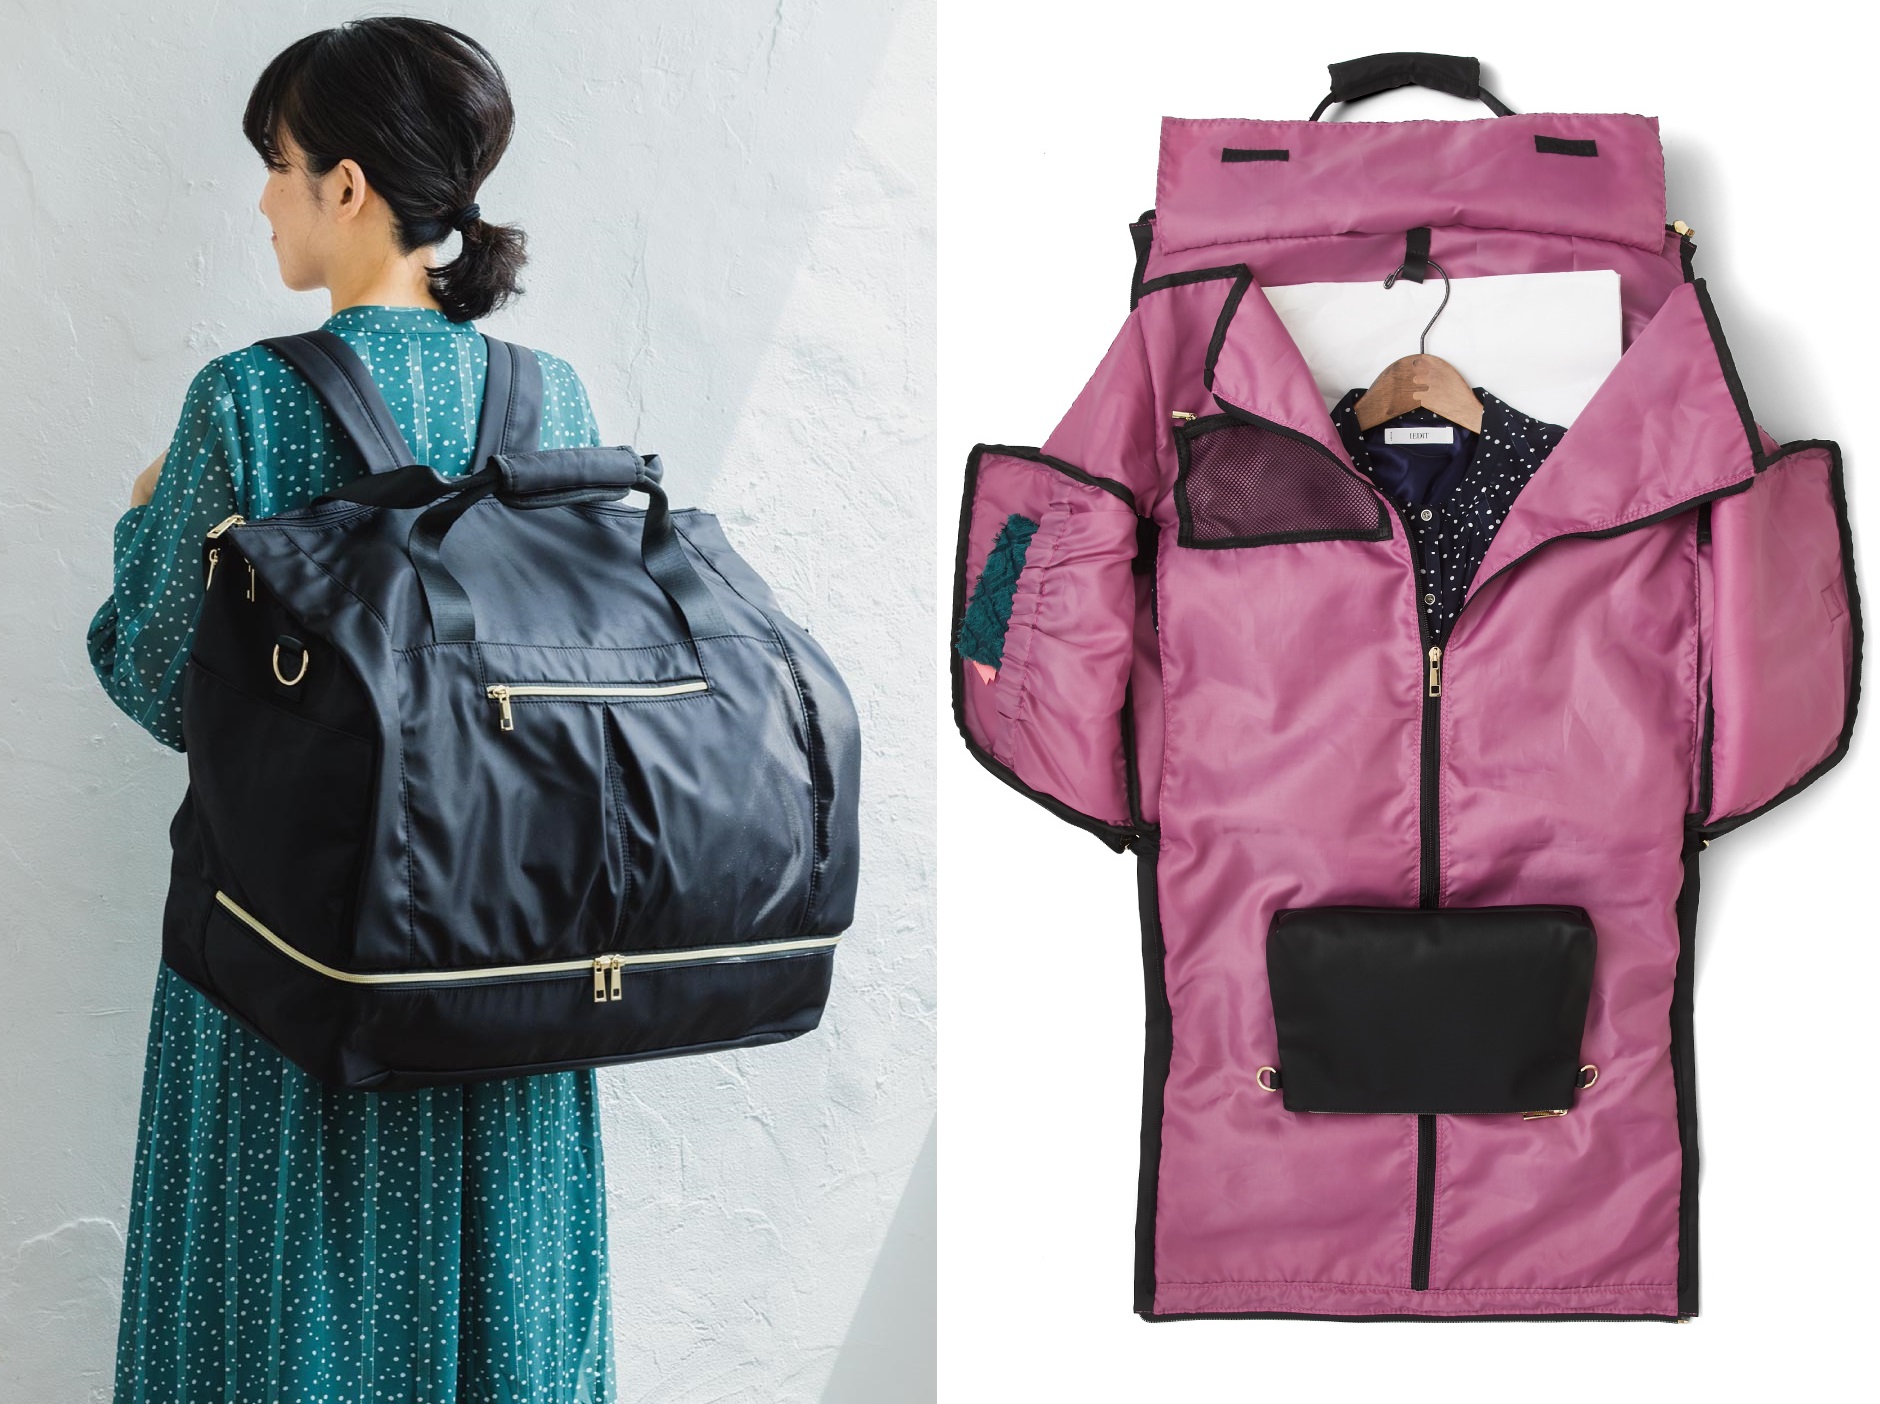 オタ活をサポートする新アイテム“超大容量・背負えるきれいめ遠征バッグ”が、推し色をおしゃれに楽しむブランドOSYAIRO×ファッションブランド